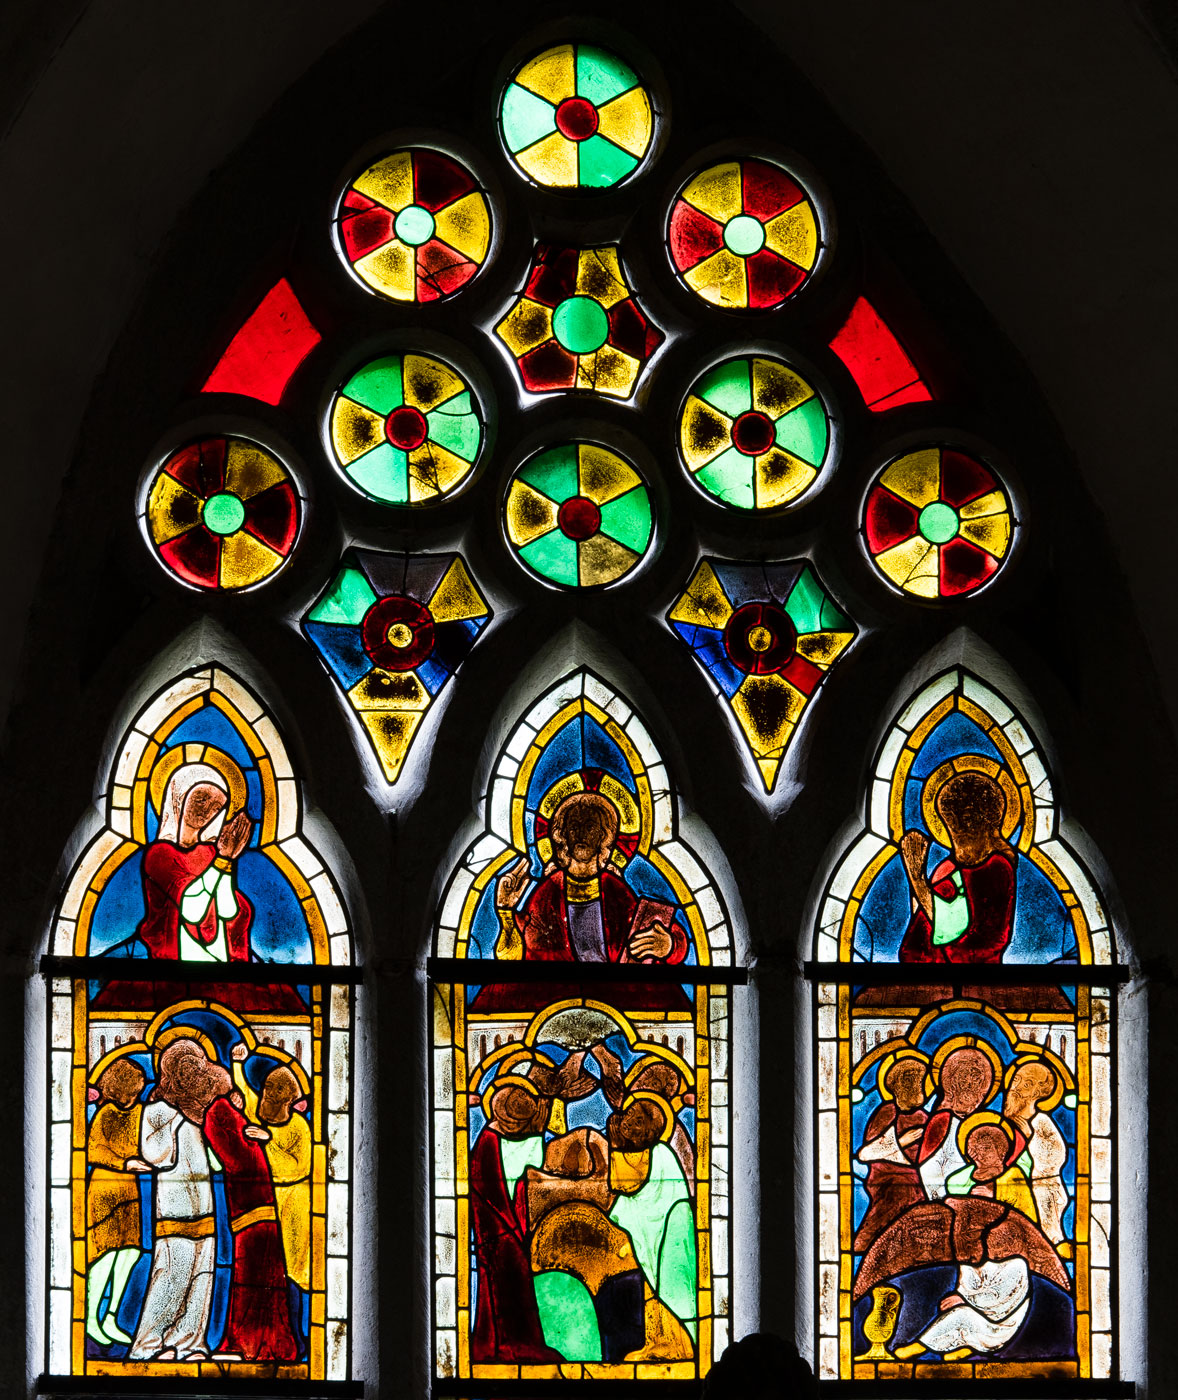 Glasmålning, östra korfönstret - Etelhems kyrka